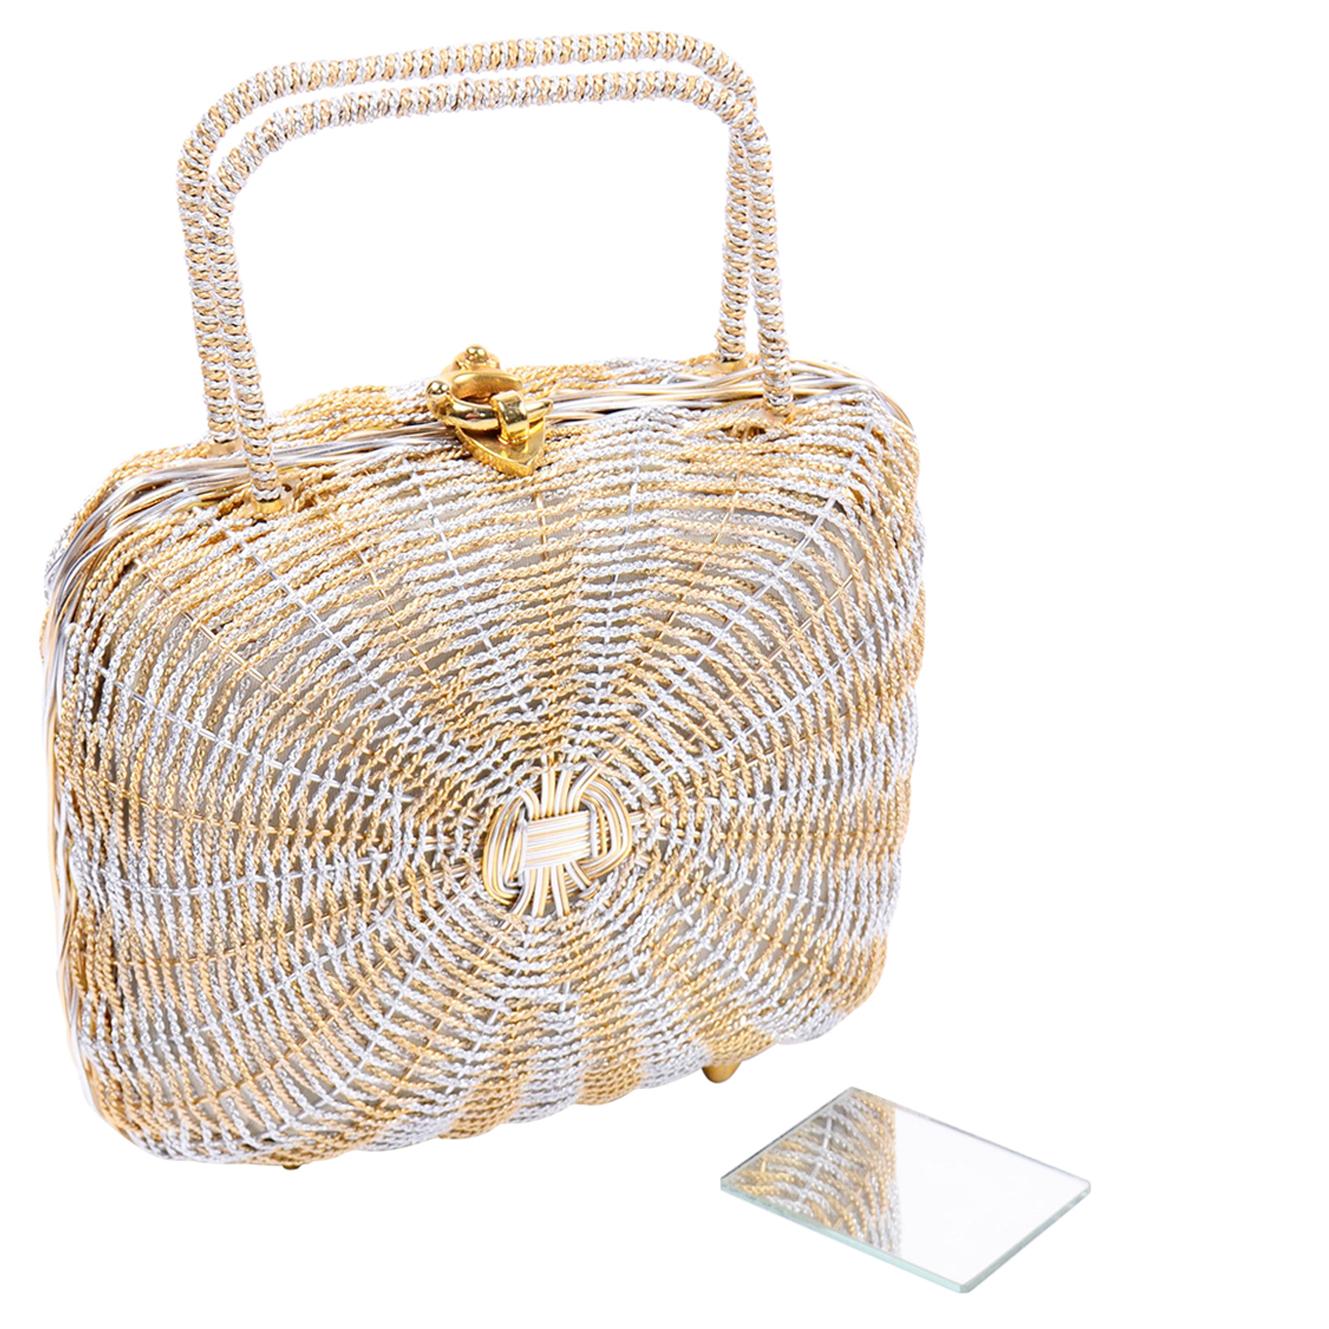 1960s Koret Vintage Bag Woven Gold & Silver Basket Handbag W Gold Hardware